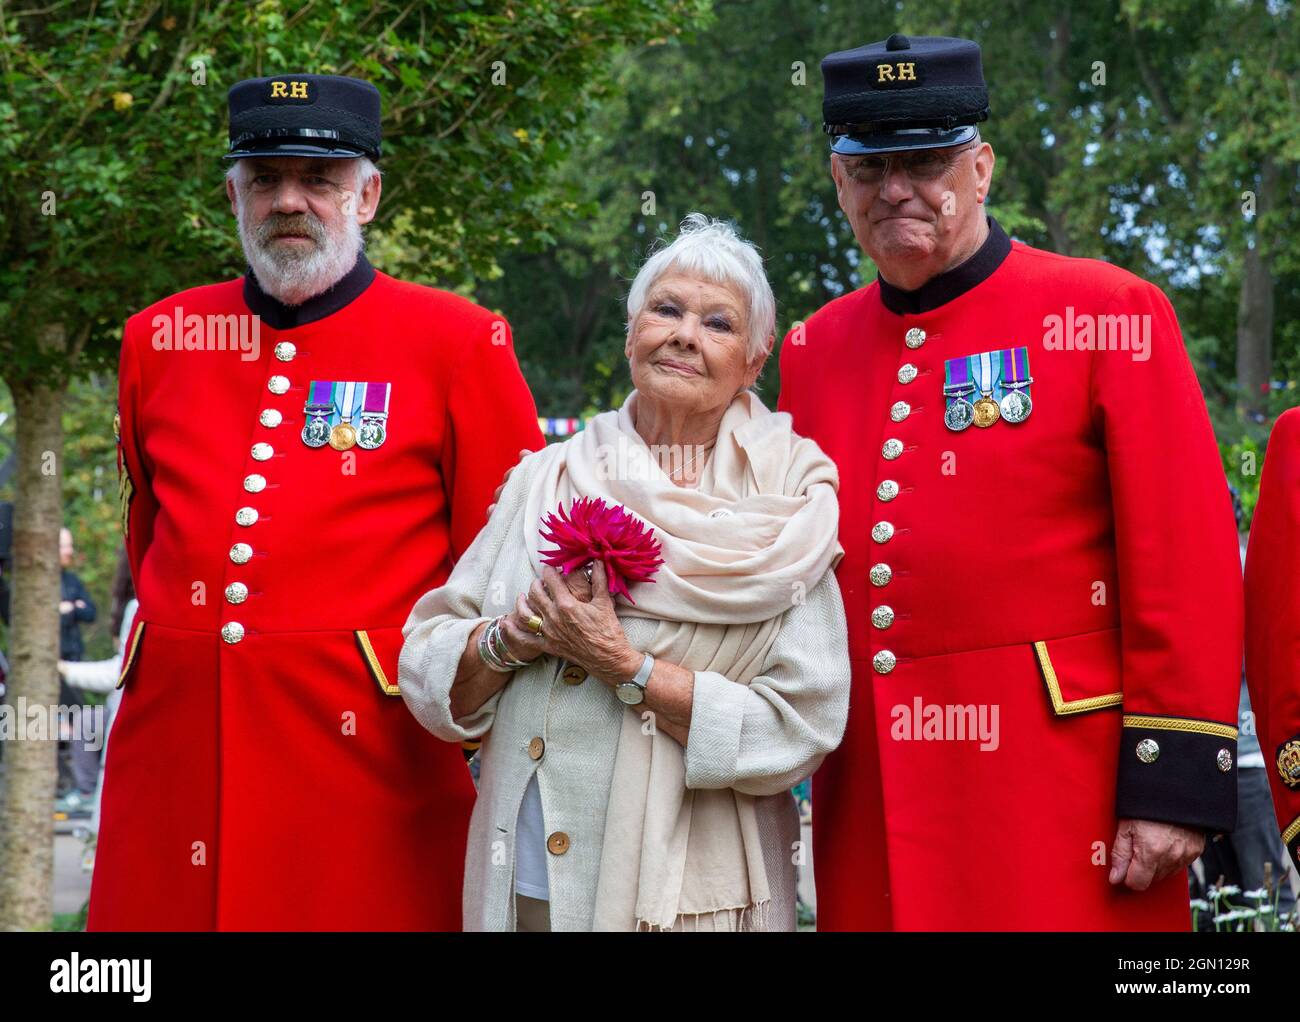 Dame Judi Dench au RHS Chelsea Flower Show posant avec les retraités de Chelsea tout en tenant une rose rouge. Banque D'Images